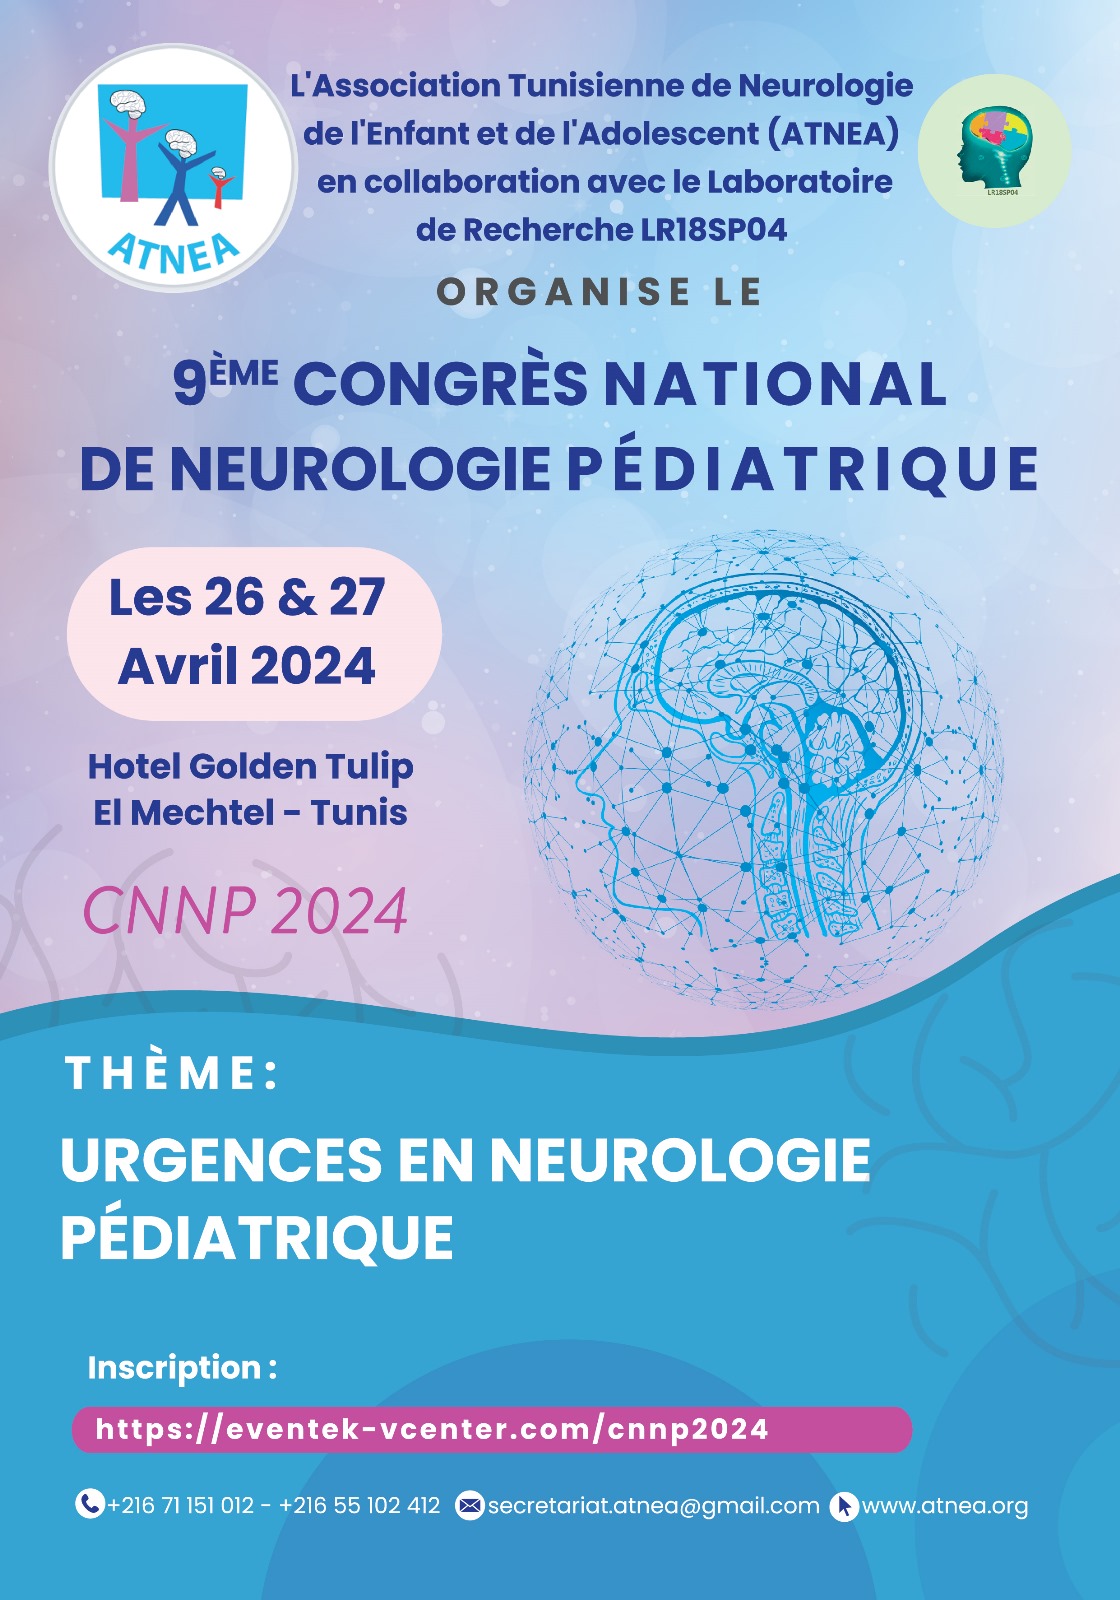 9ème congrès national de neurologie pédiatrique